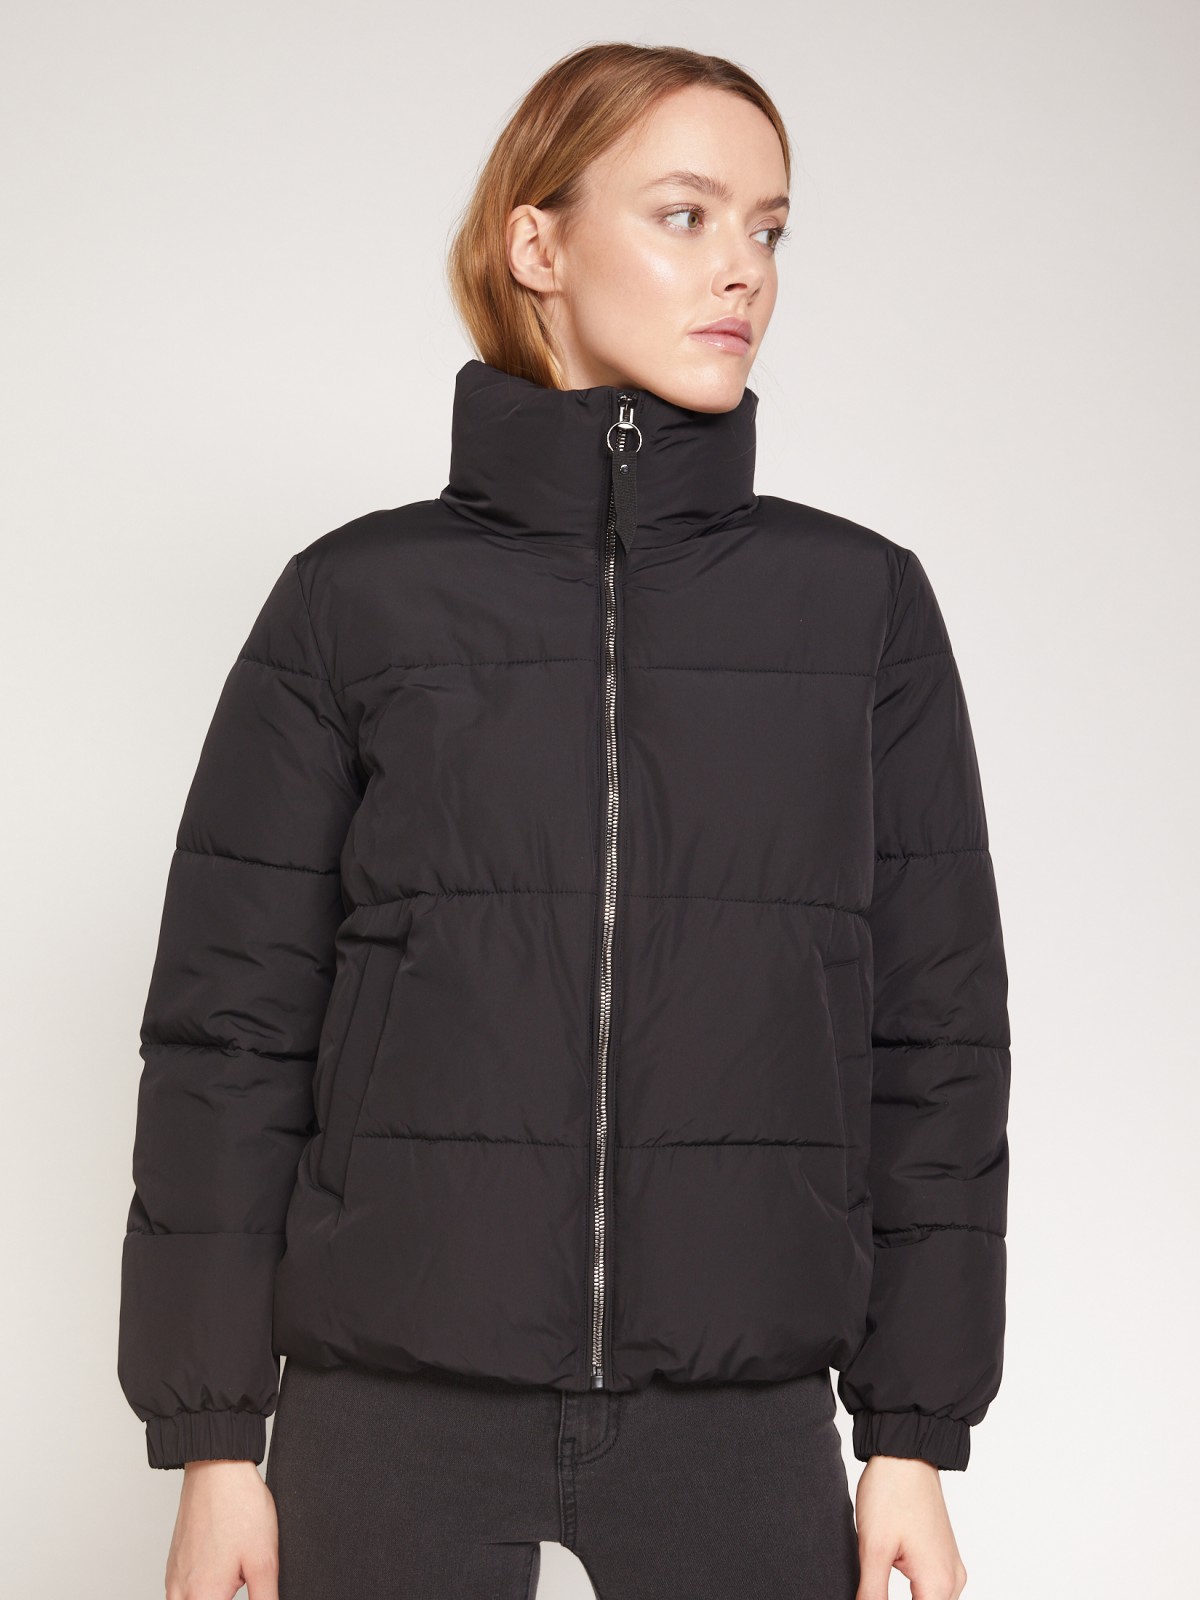 Тёплая куртка с высоким воротником-стойкой zolla 021335112034, цвет черный, размер XS - фото 4